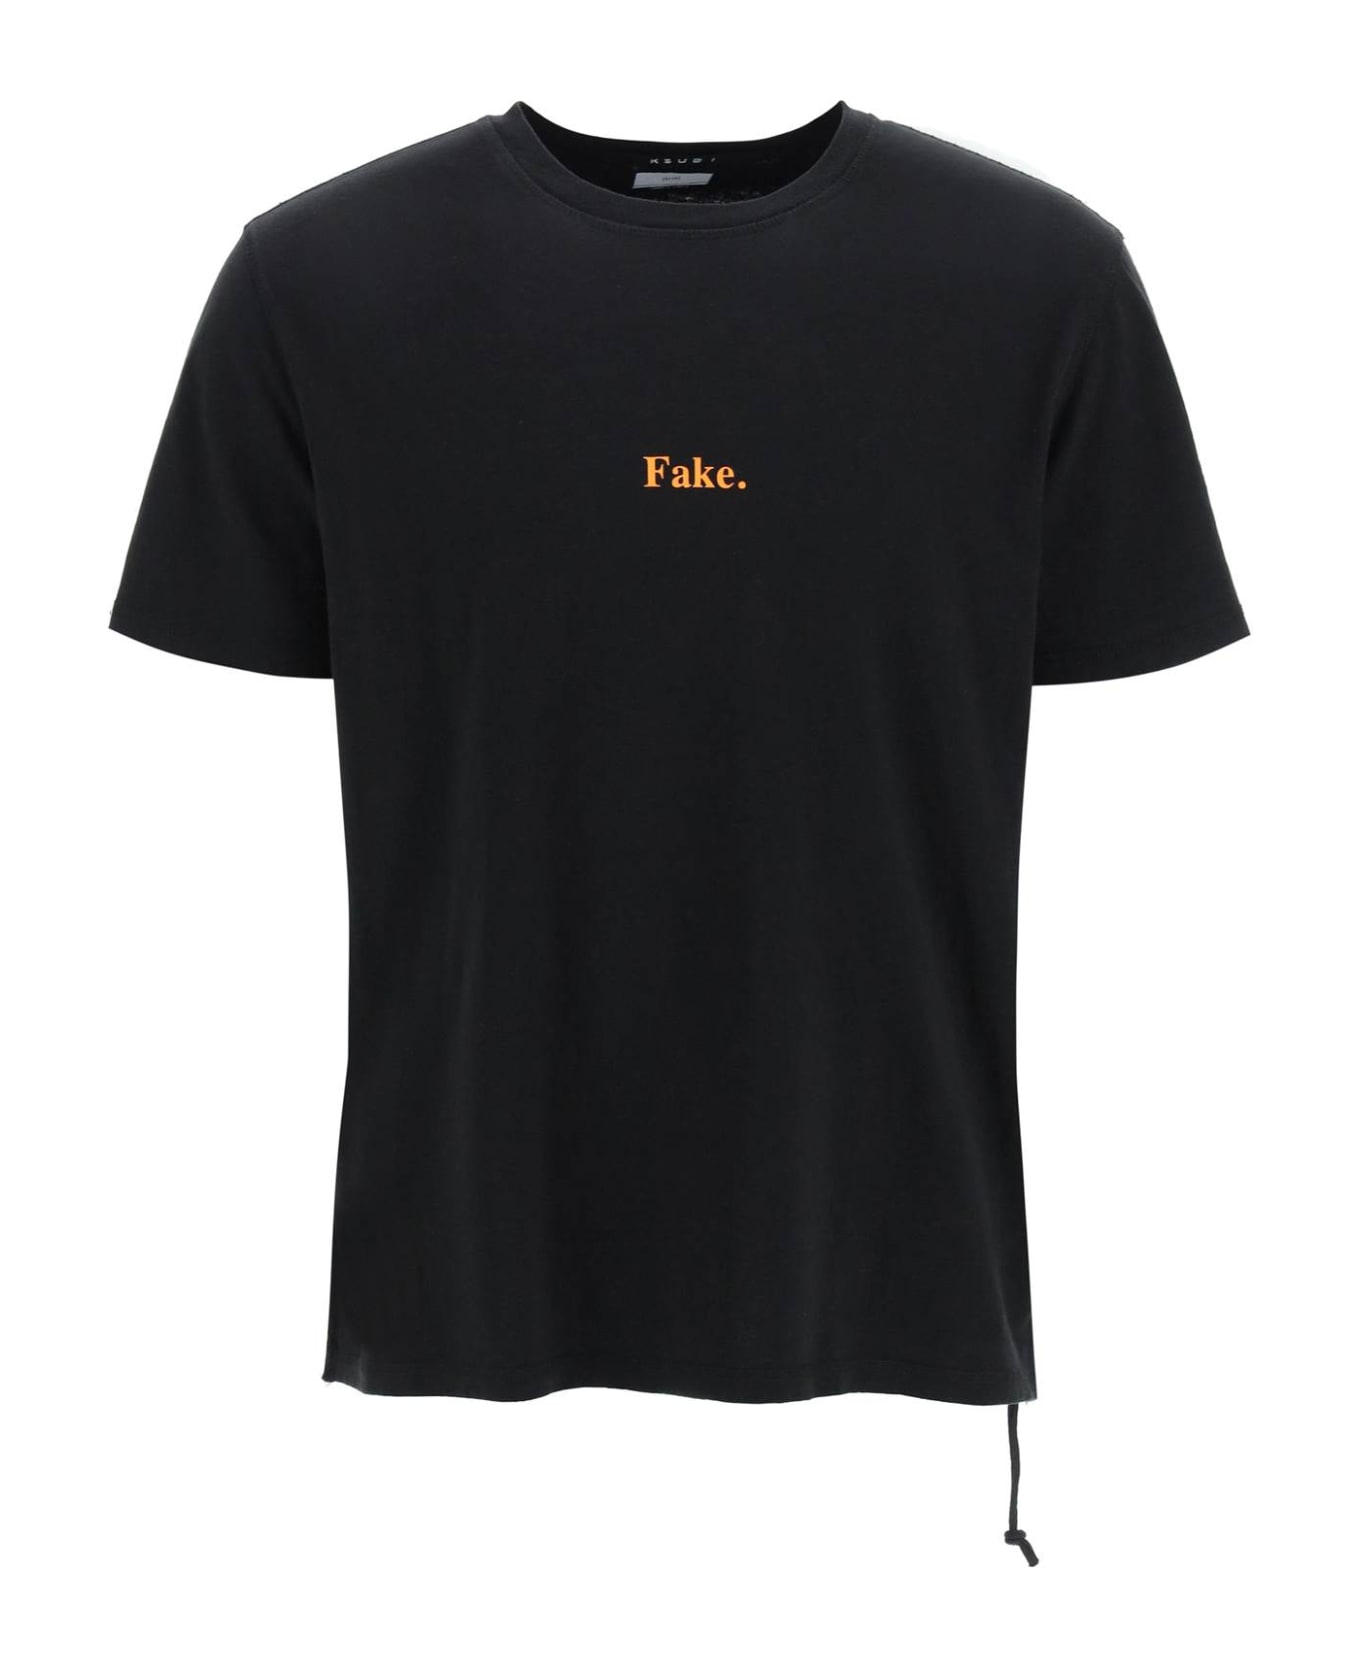 Ksubi 'fake' T-shirt - BLACK (Black)